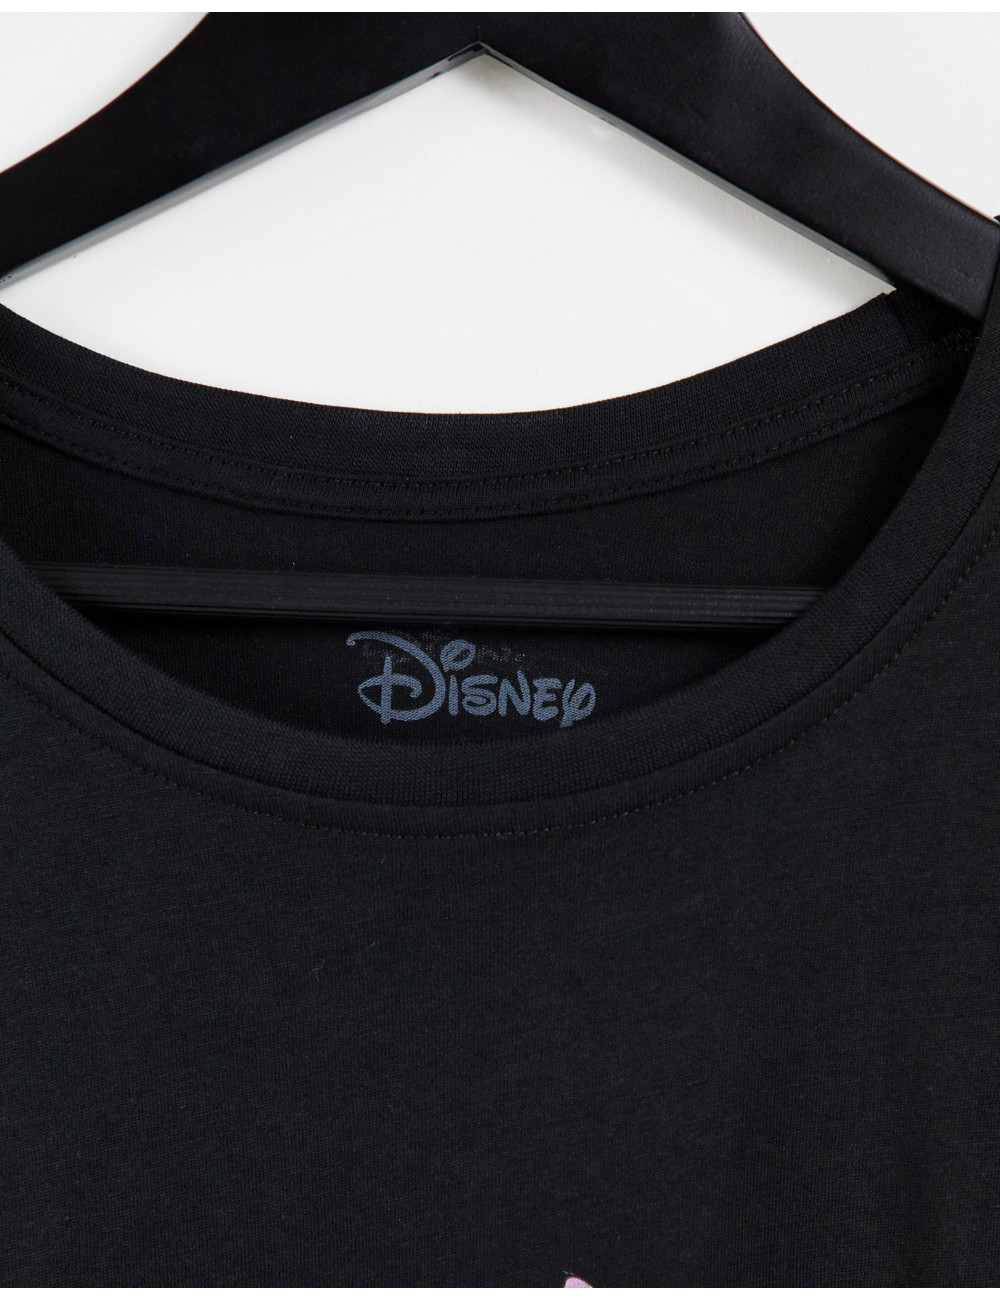 Disney Stitch t-shirt dress...